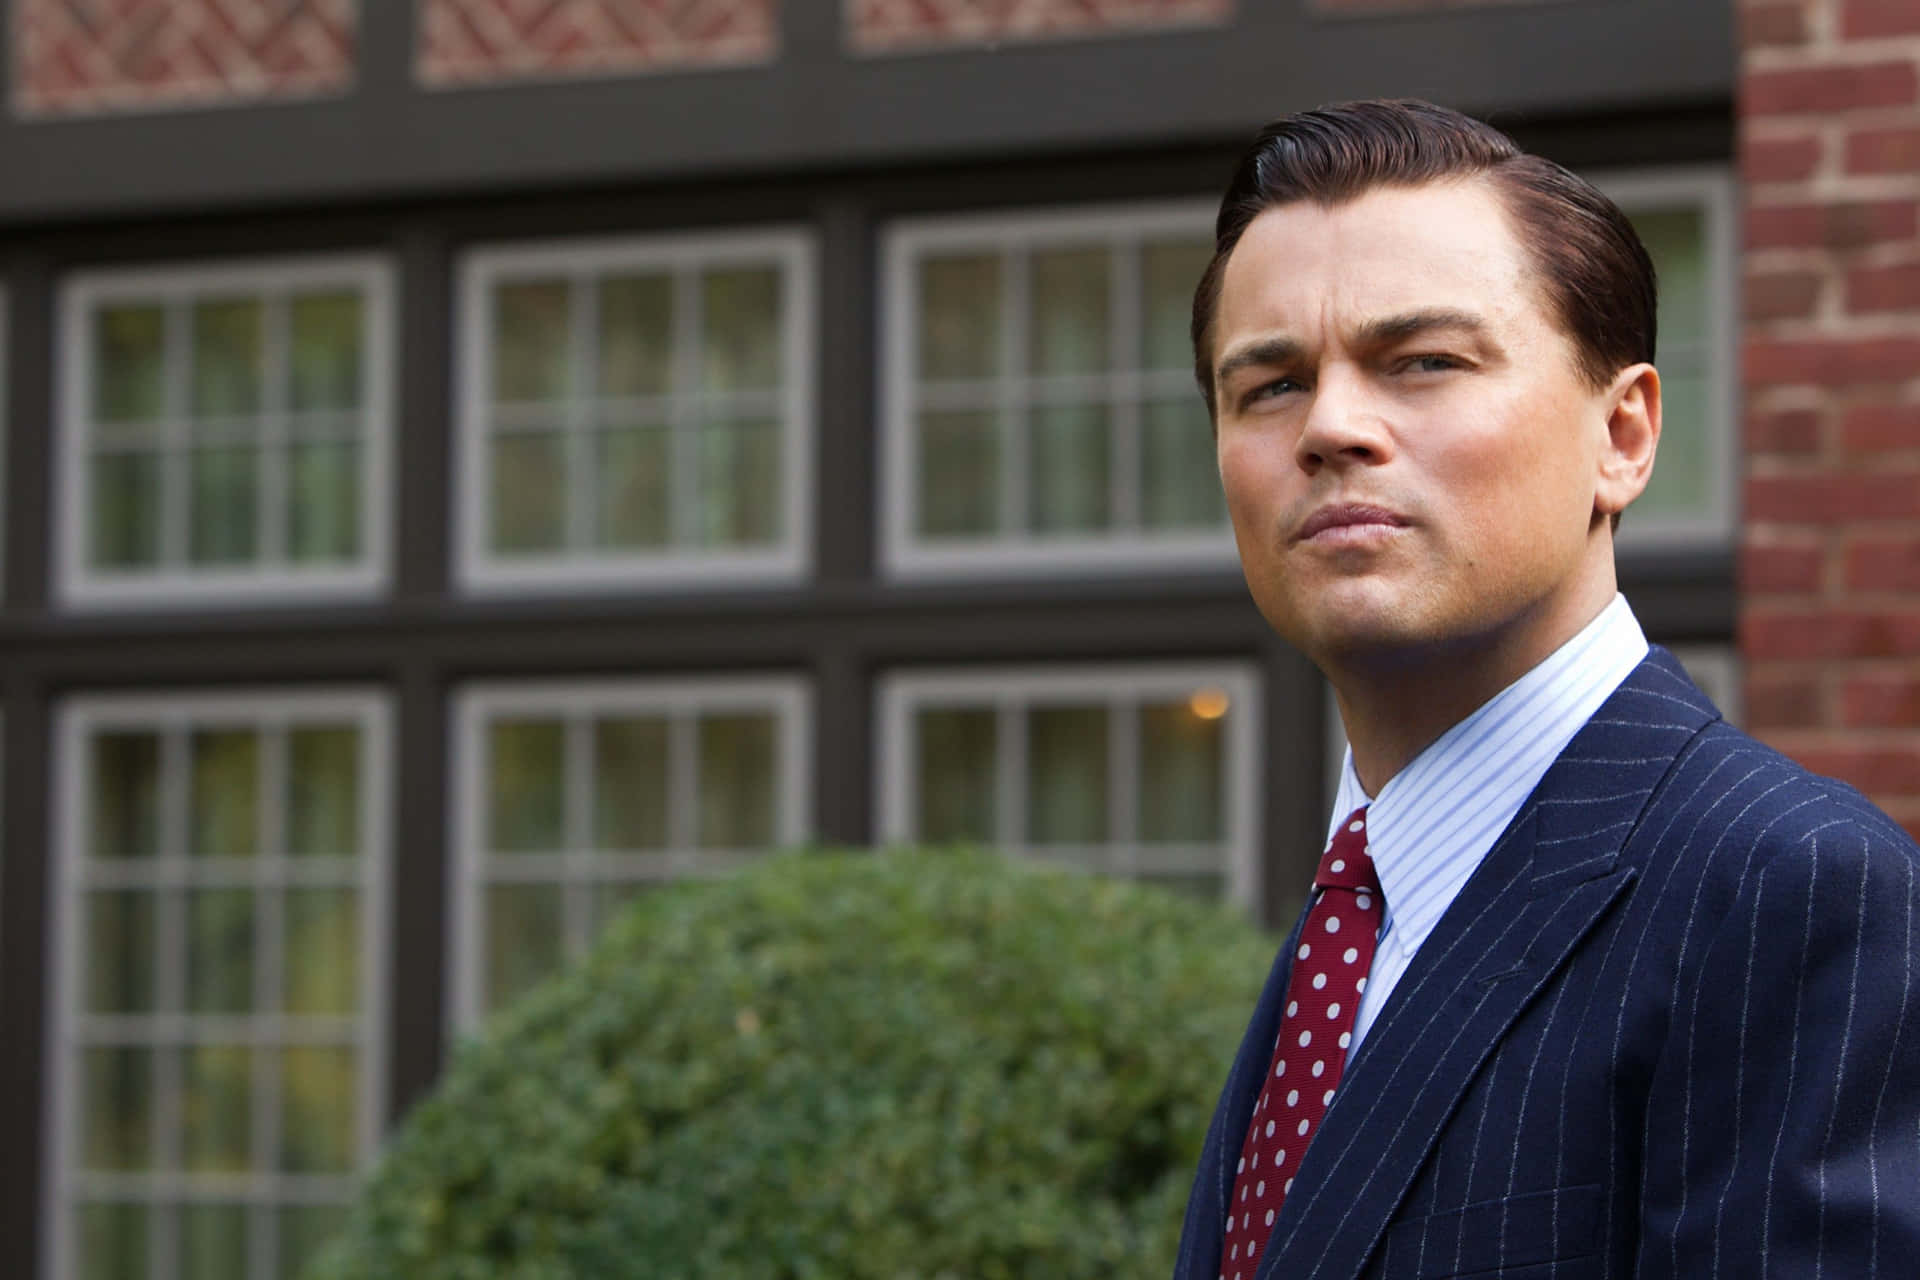 Leonardo DiCaprio as Jordan Belfort in The Wolf of Wall Street